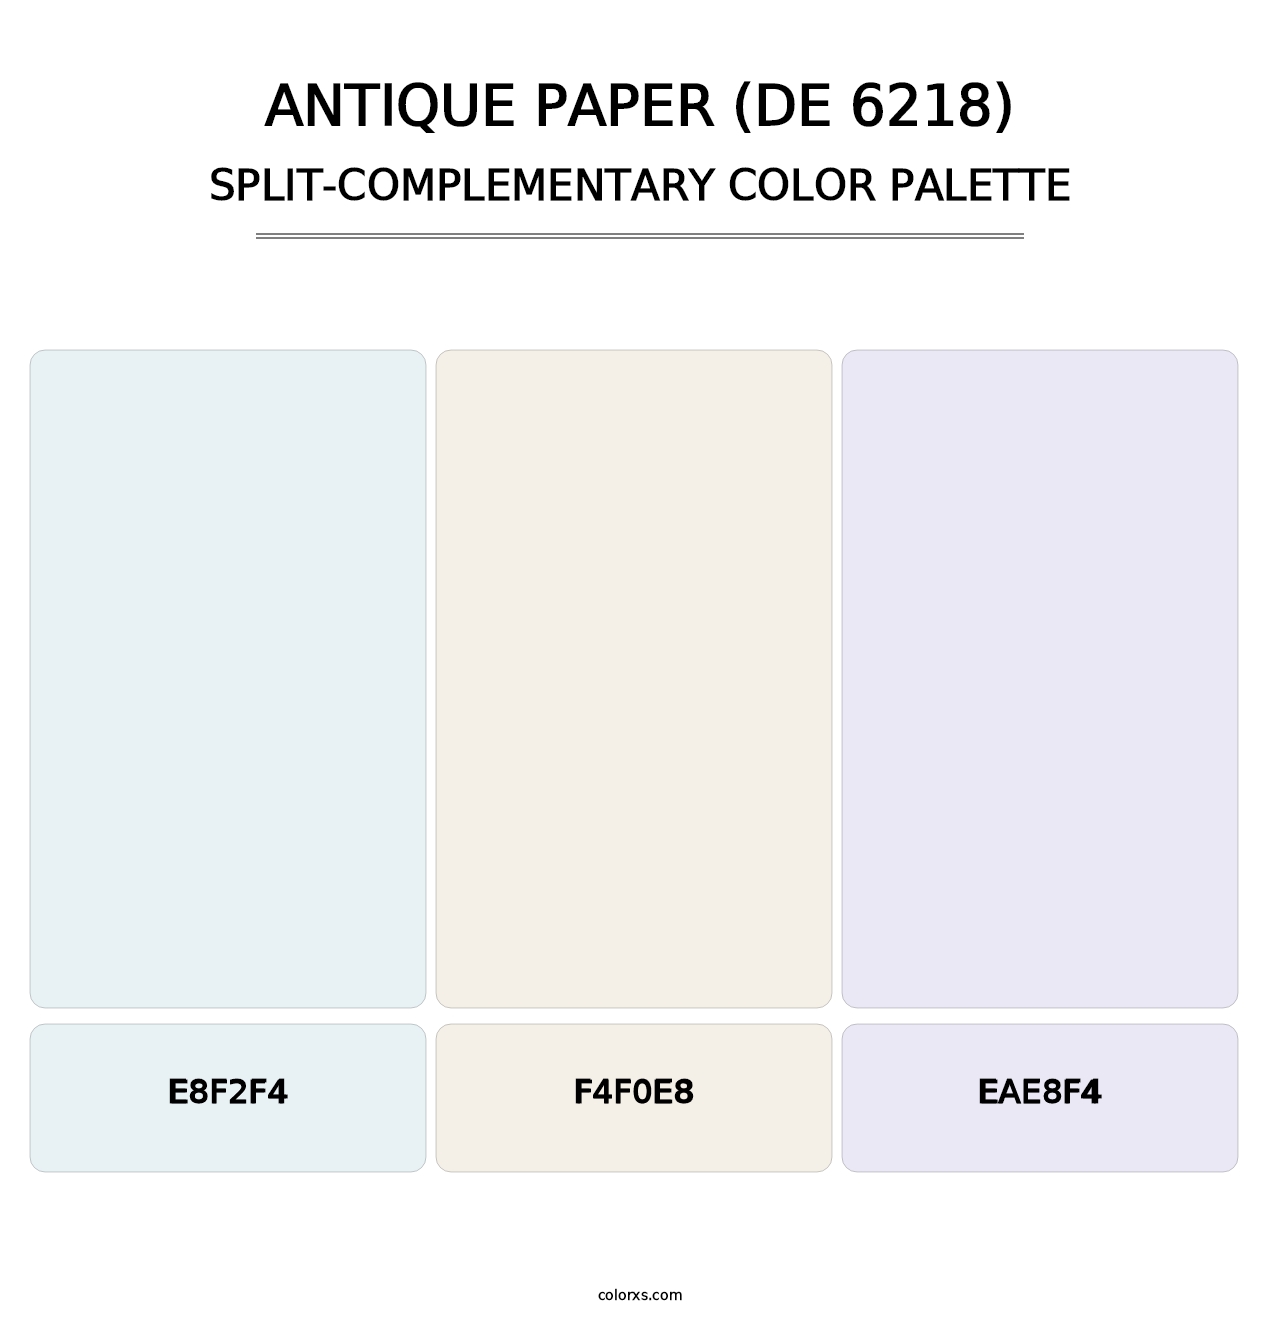 Antique Paper (DE 6218) - Split-Complementary Color Palette